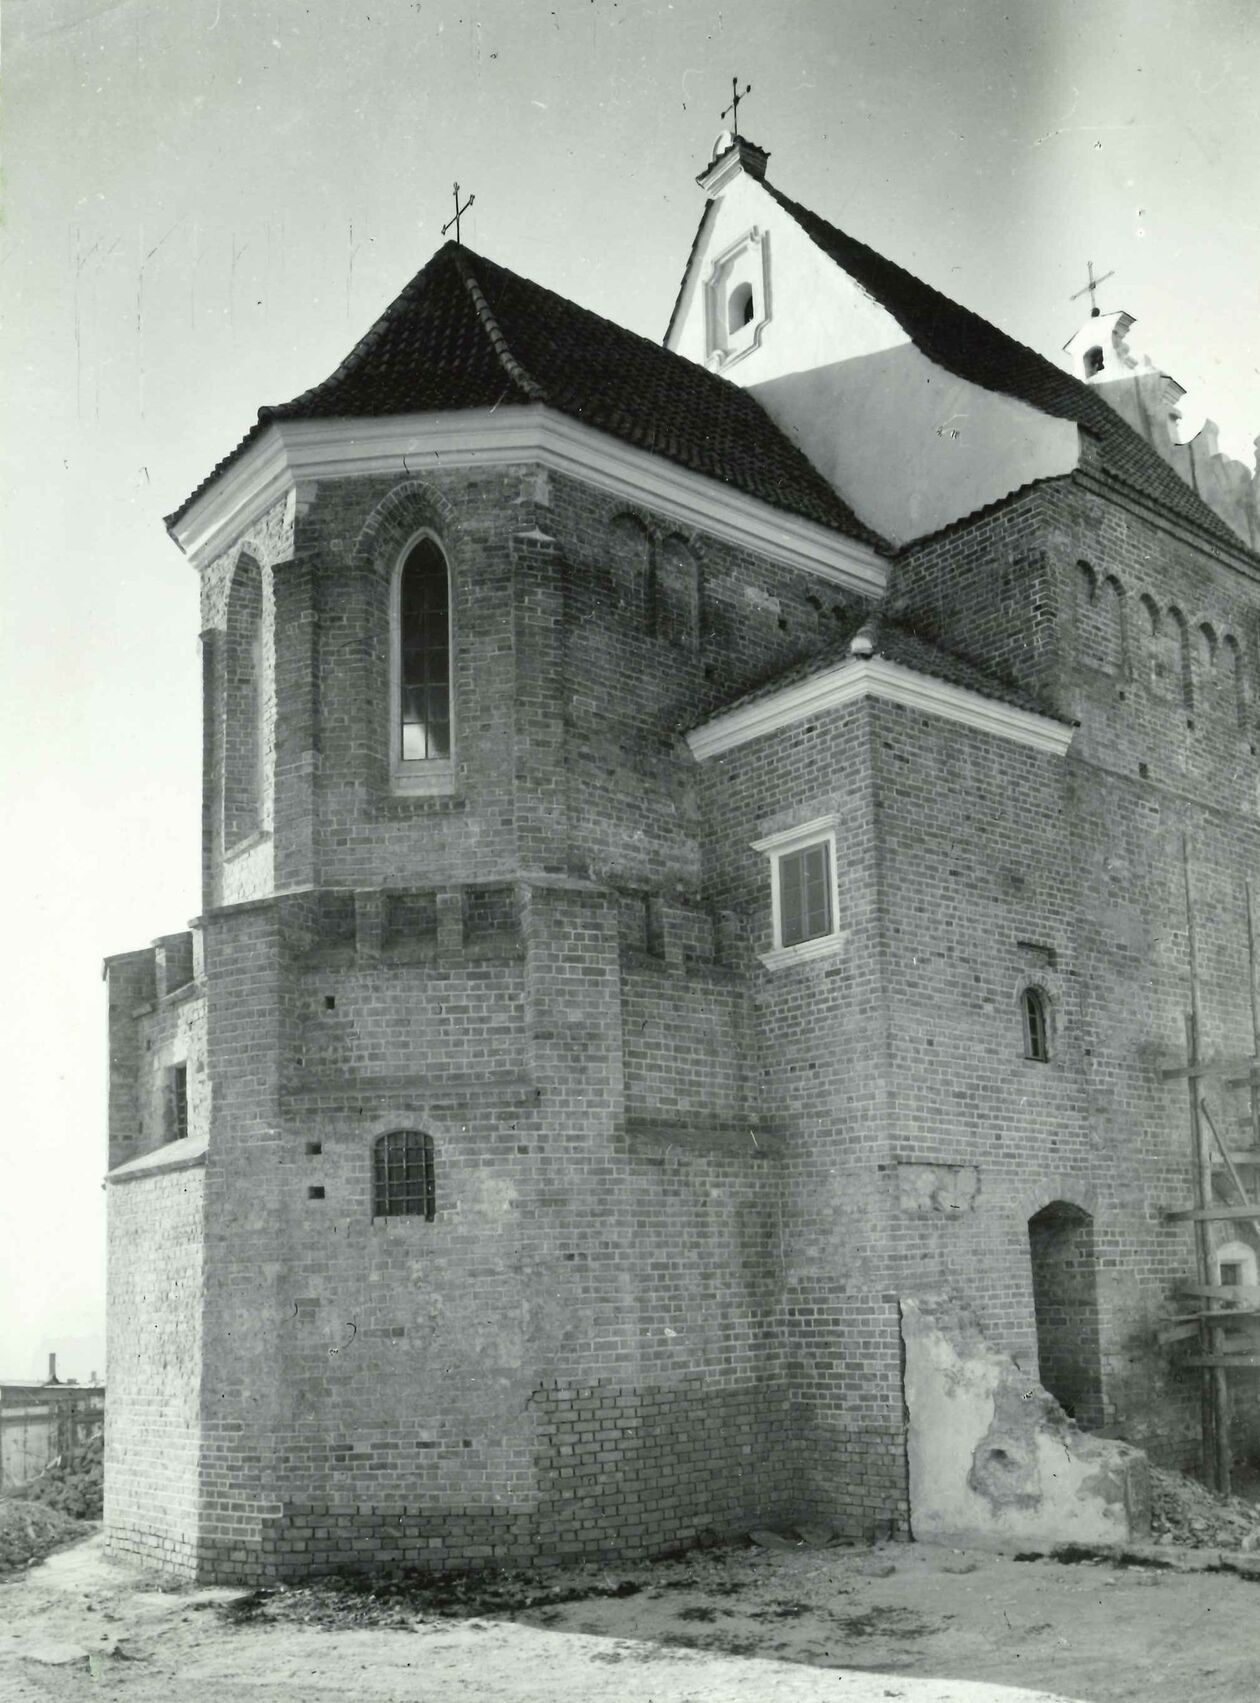  <p>Kaplica zamkowa w 1960 roku. Fot. J. Szandomirski, stan po regotyzacji. Fot. w archiwum WUOZ w Lublinie.</p>